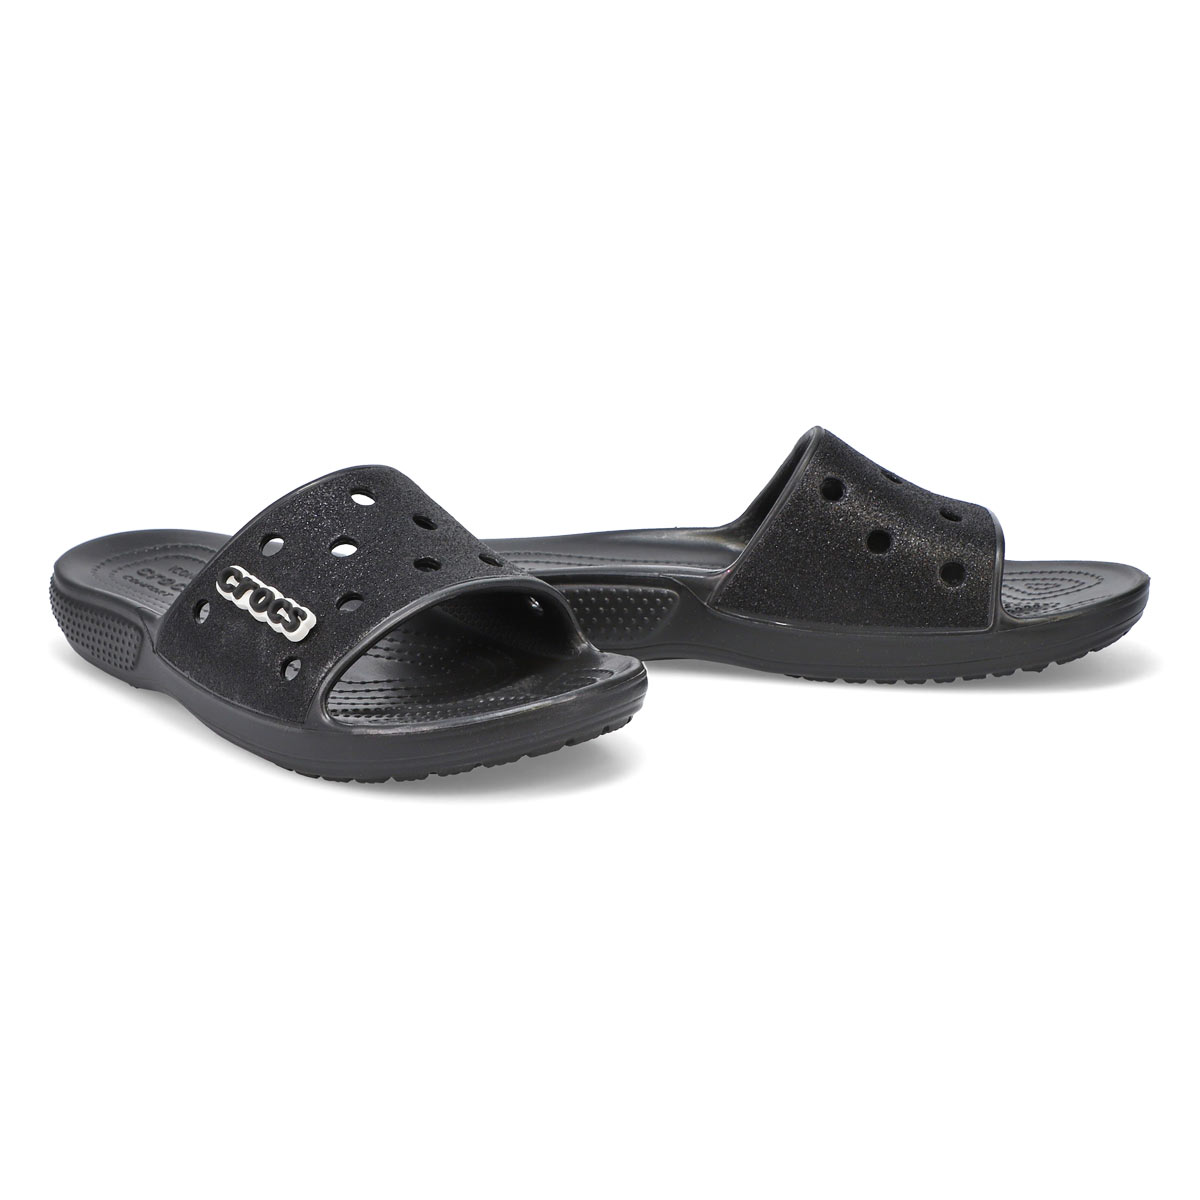 Crocs Women's Classic Crocs Sandal - Glitter | SoftMoc.com